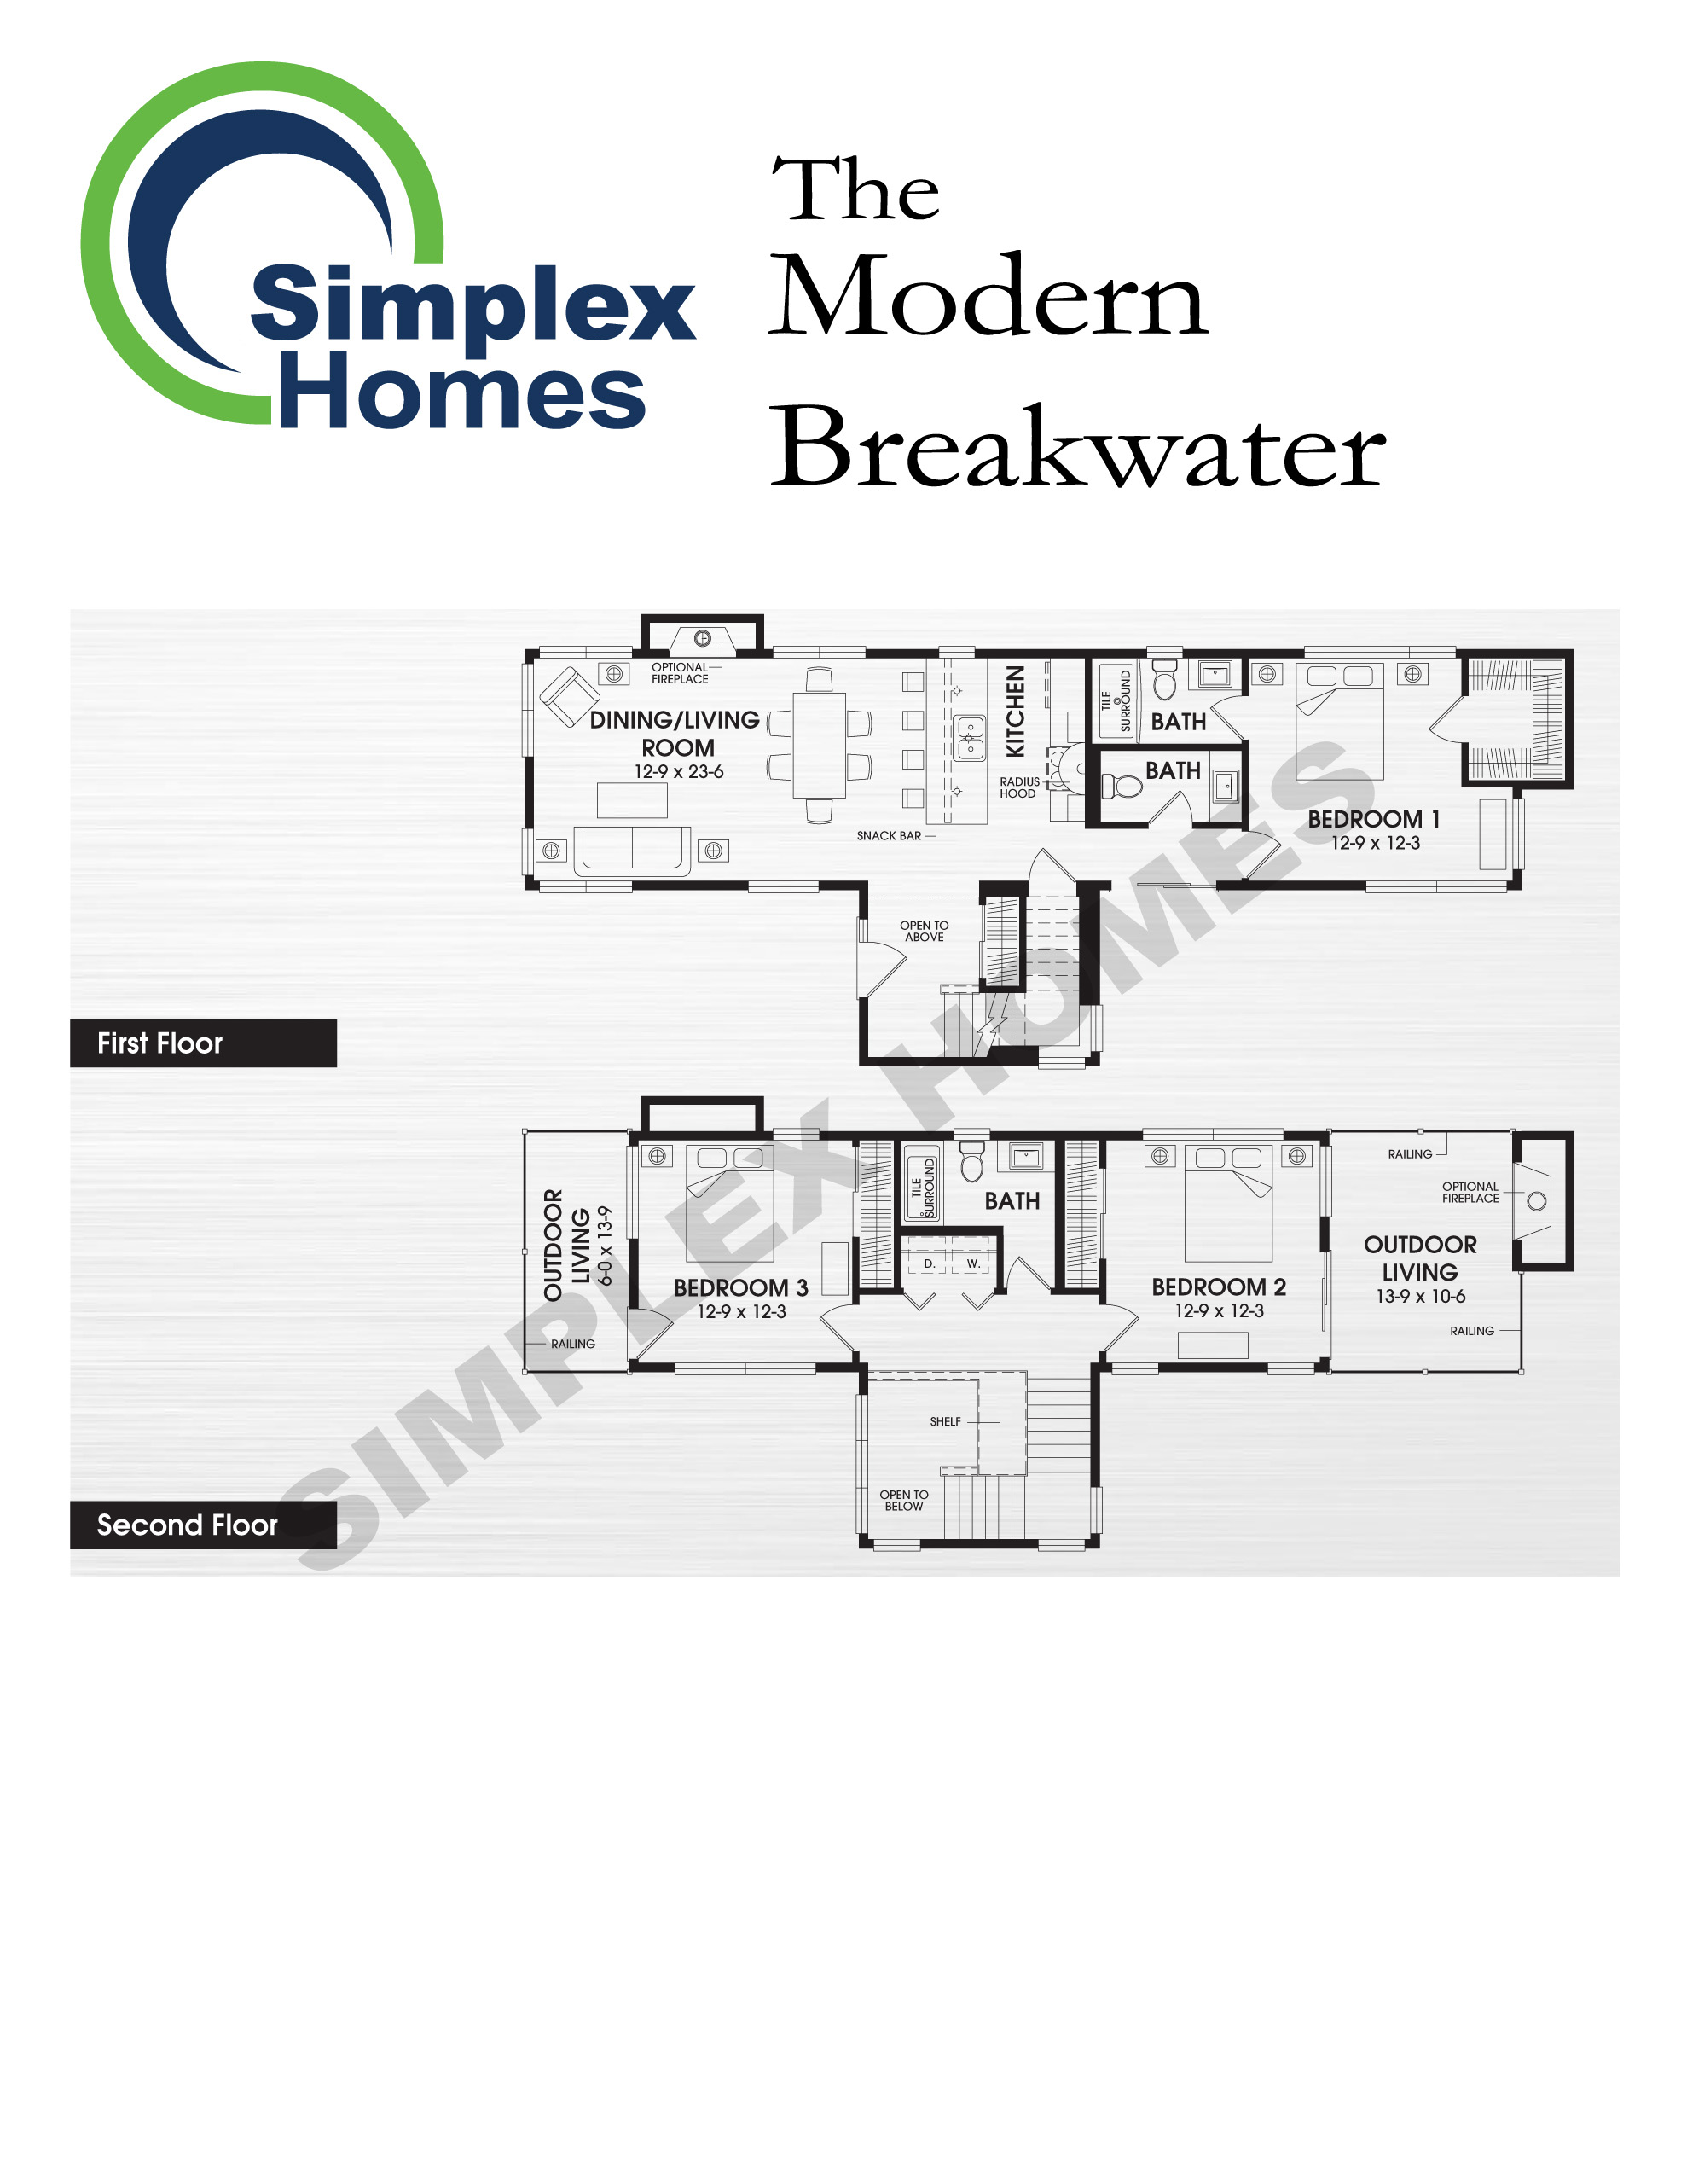 modern breakwater